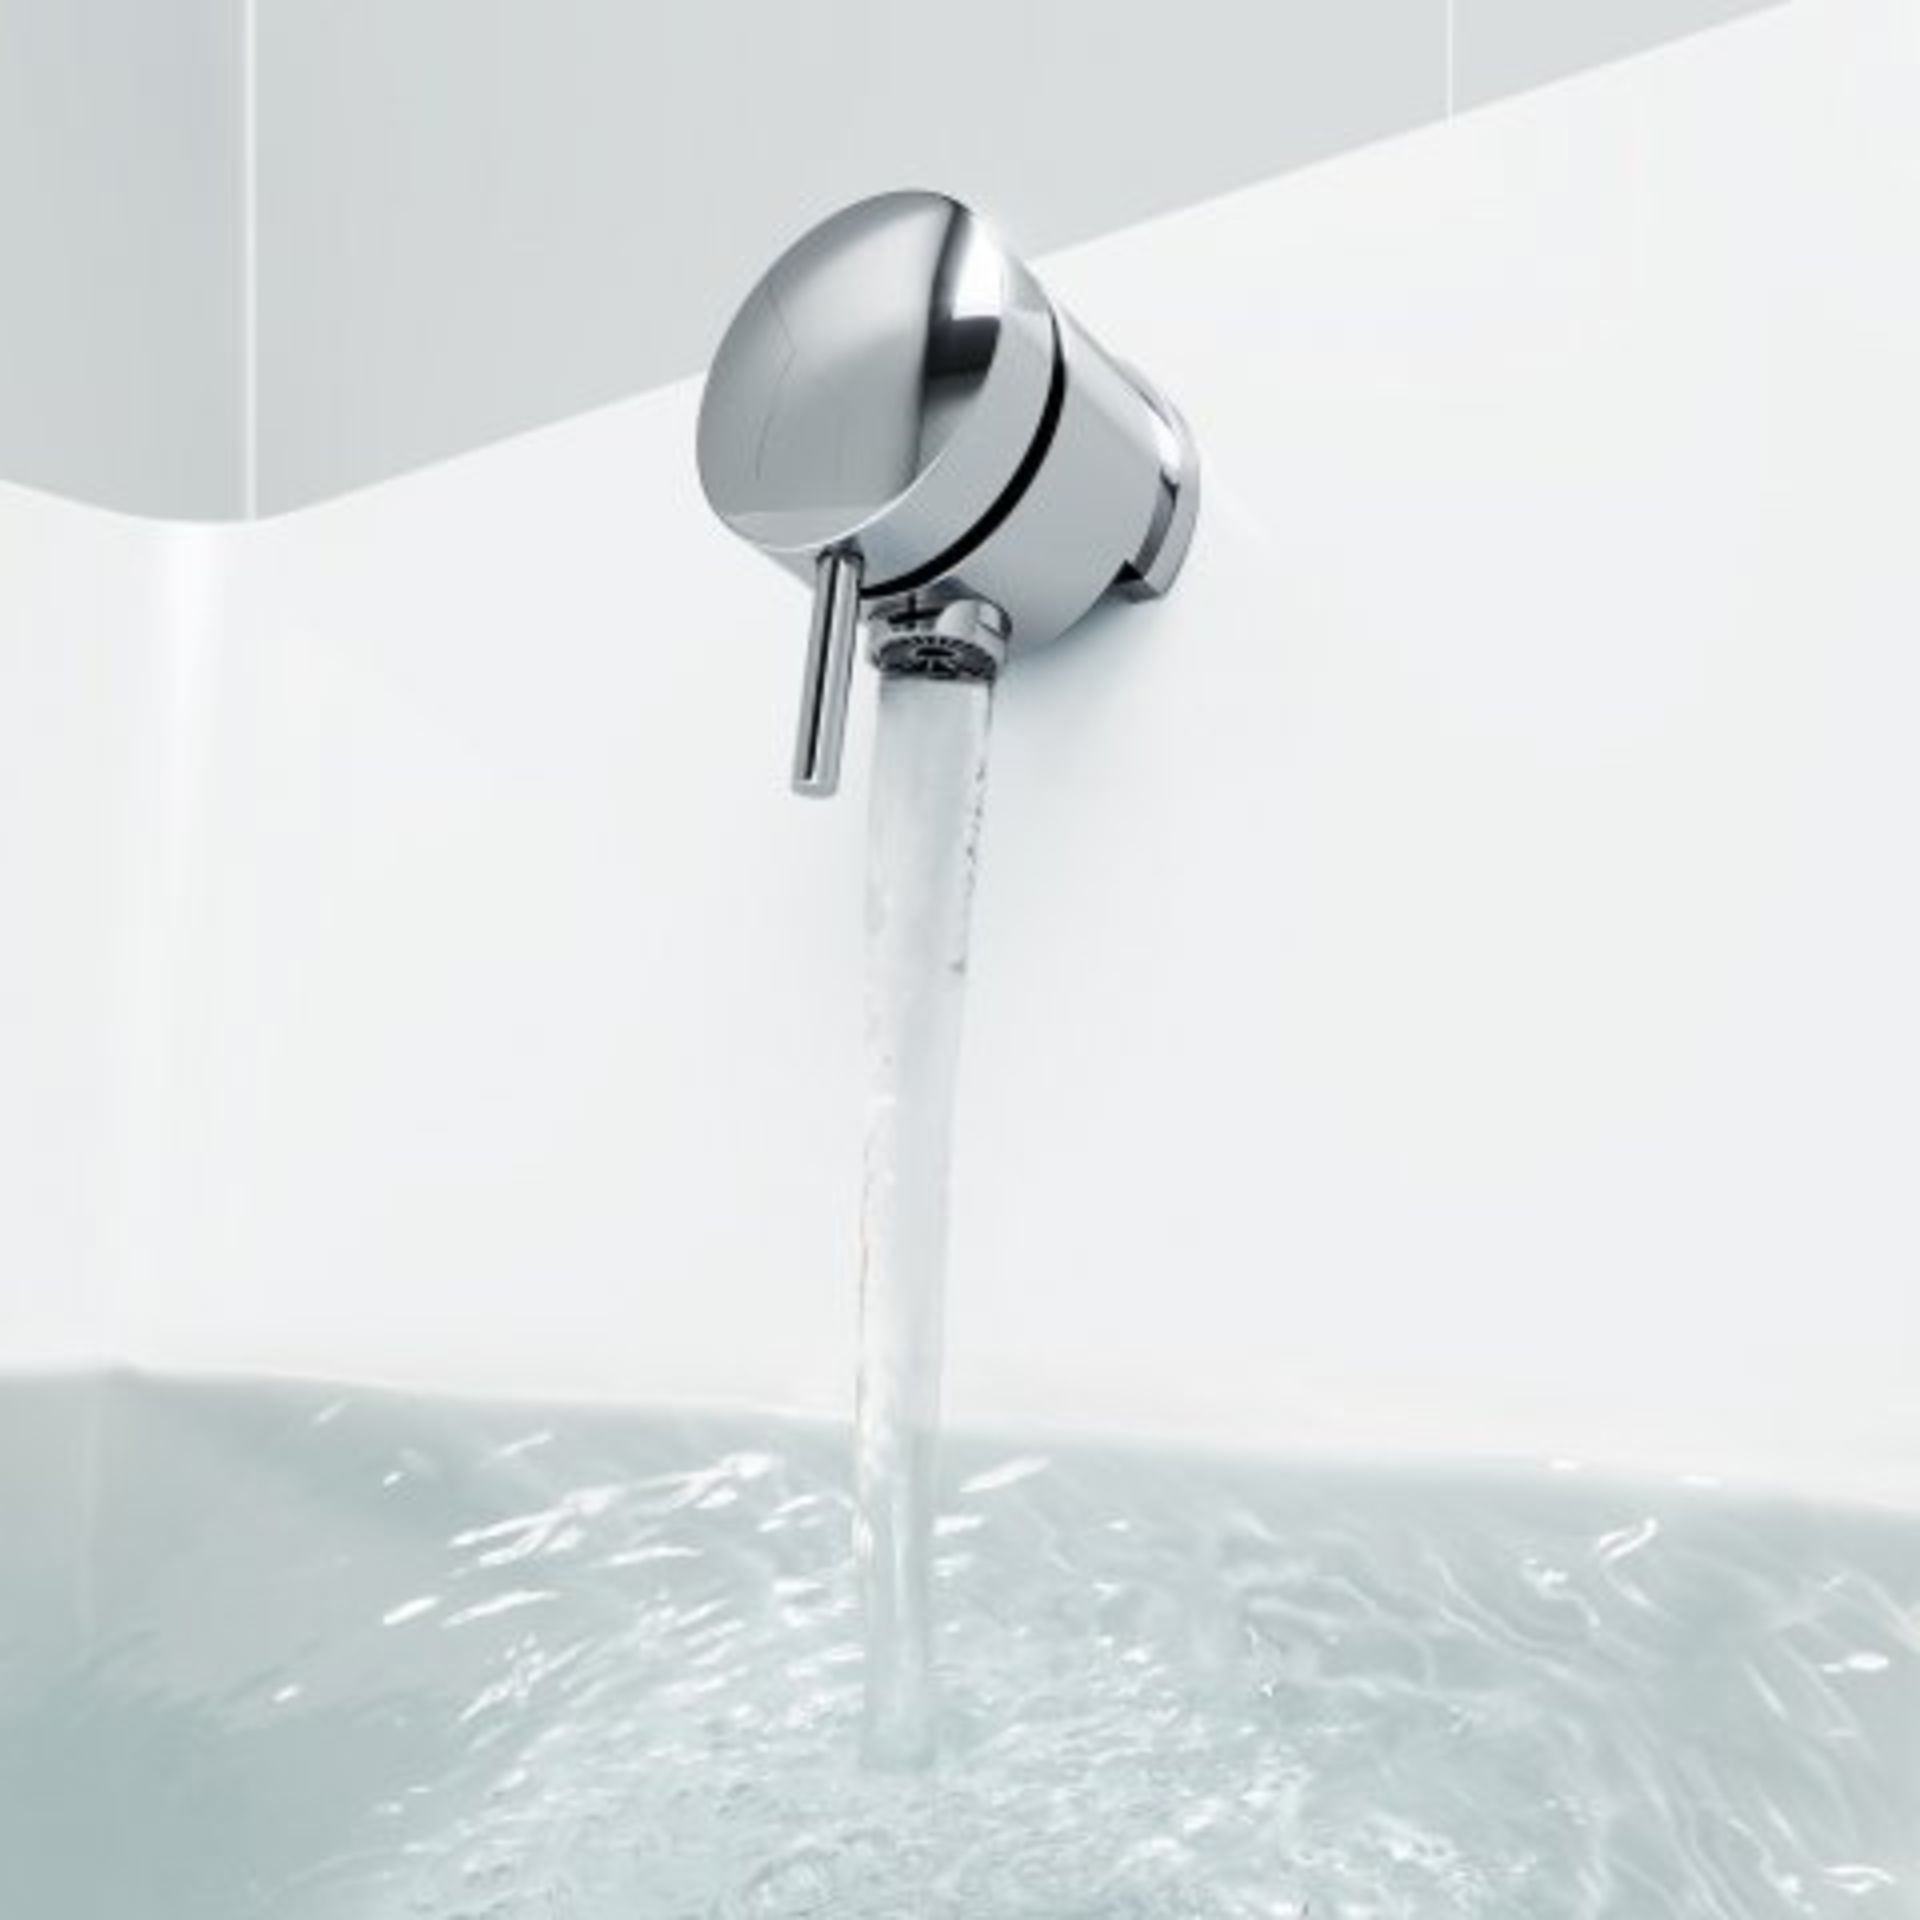 (M159) Bath Filler Waste Overflow Kit - Pop-Up. RRP £74.99. This bath filler waste overflow kit